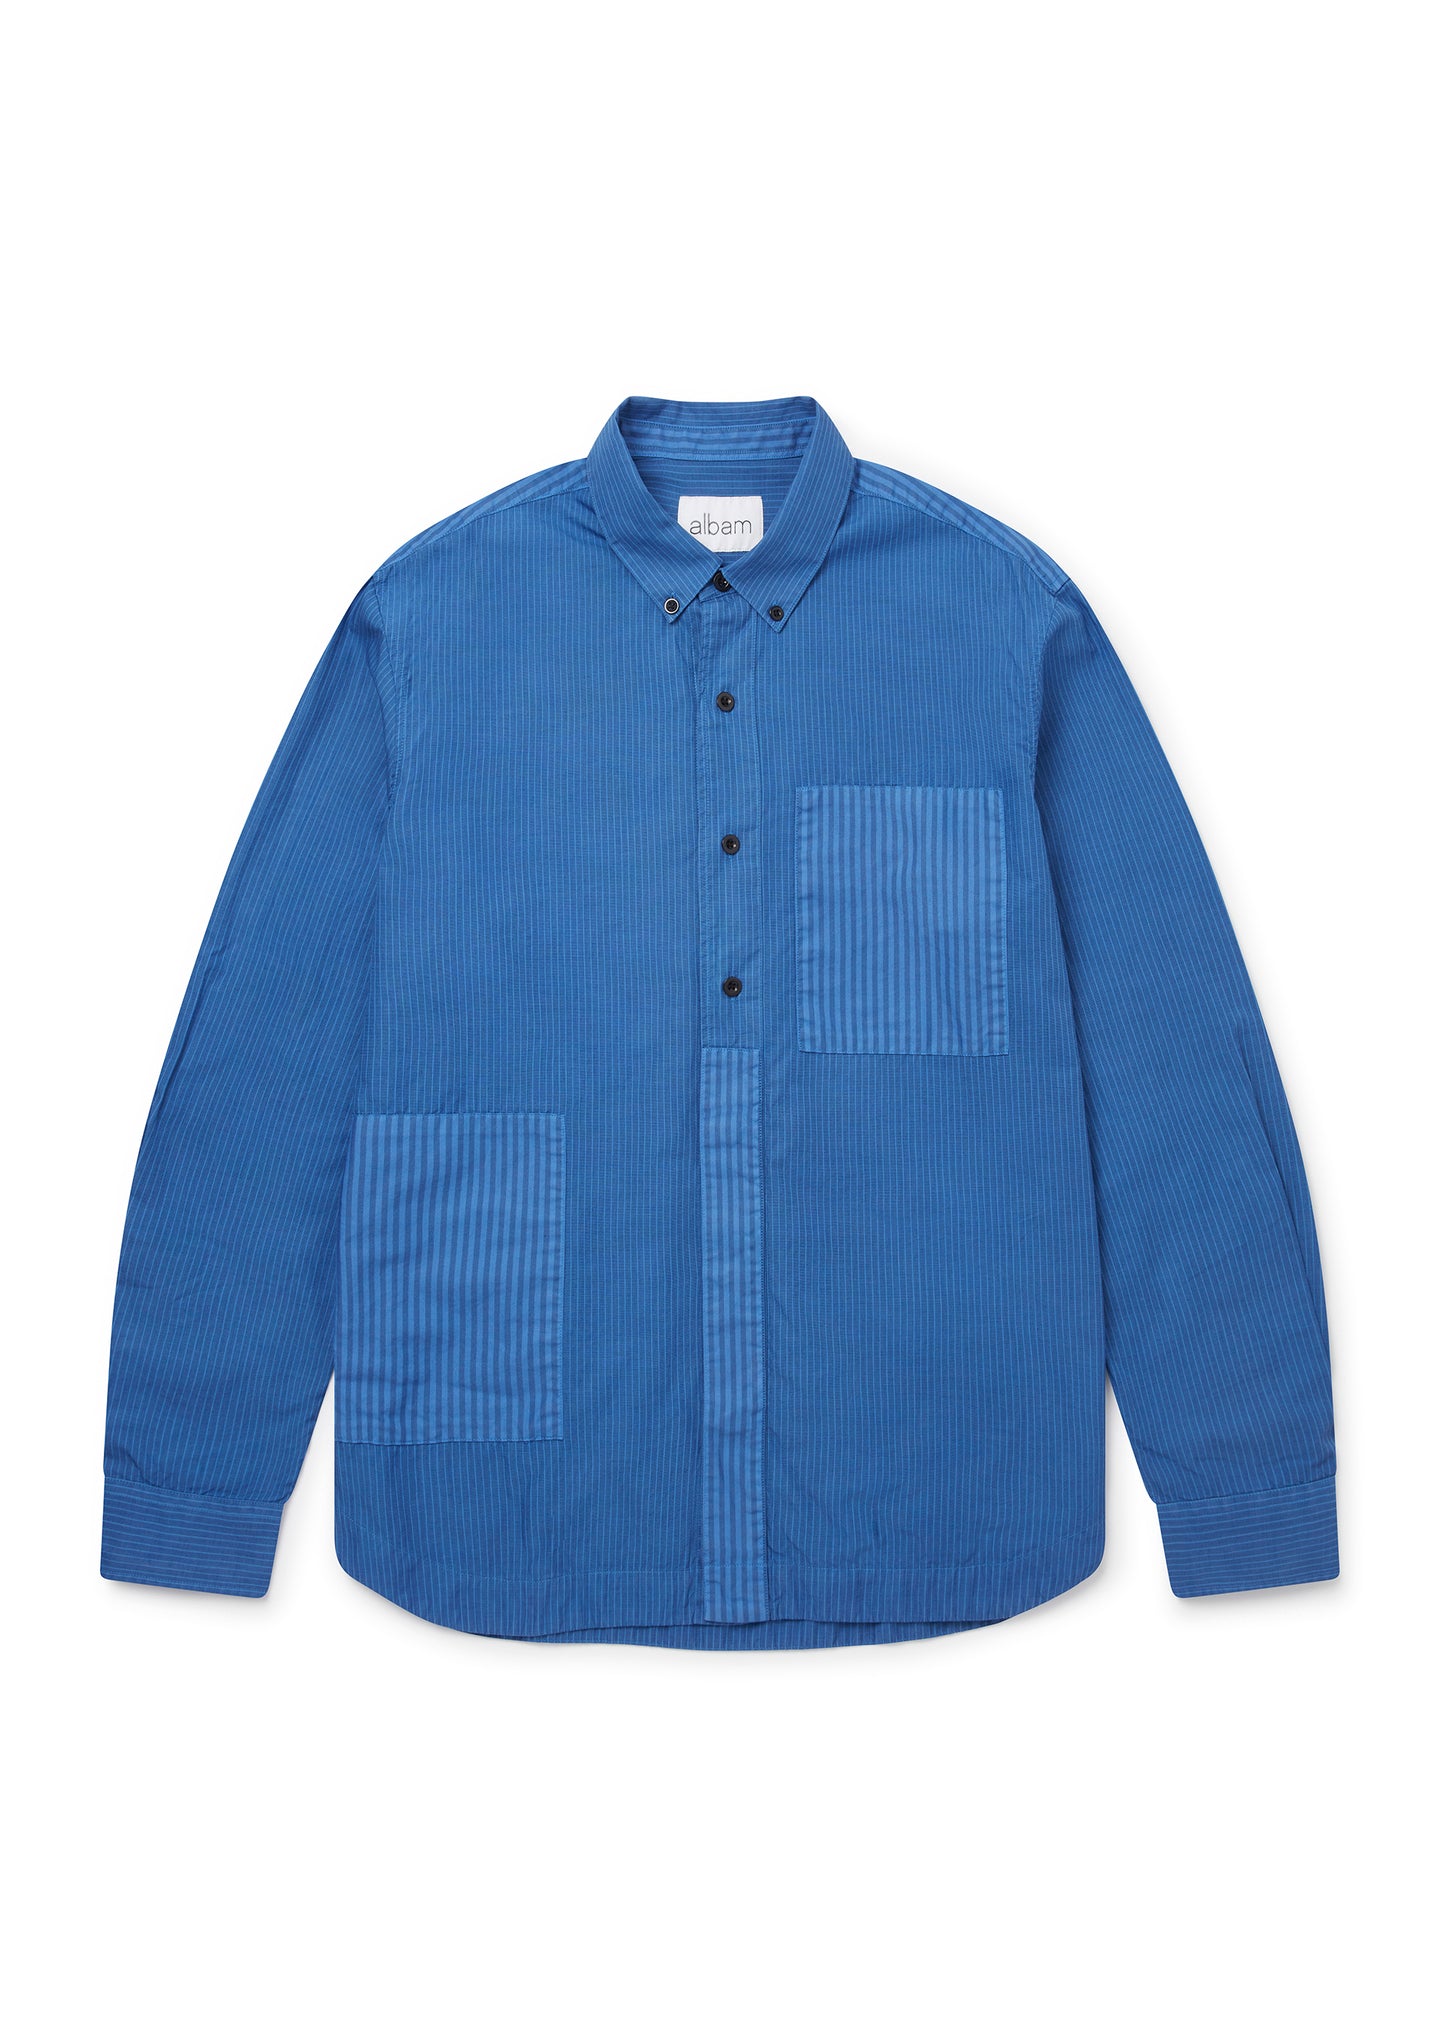 Stripe Cut & Sew Shirt in Blue